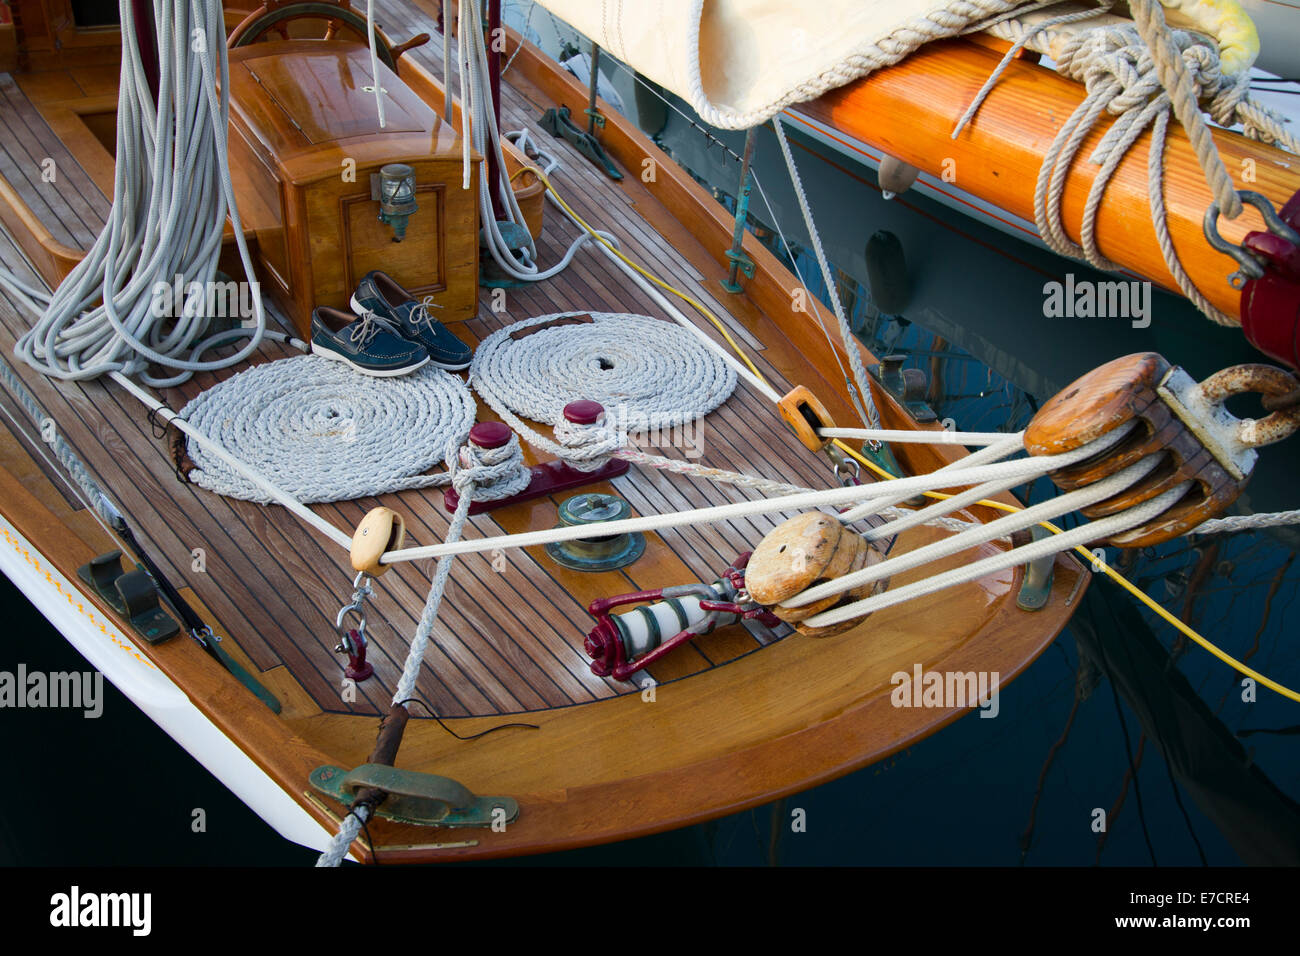 Imperia, Italie. 14 septembre 2014. Détail d'un yacht vintage participant à Vele d'Epoca classic yachts regatta. Banque D'Images